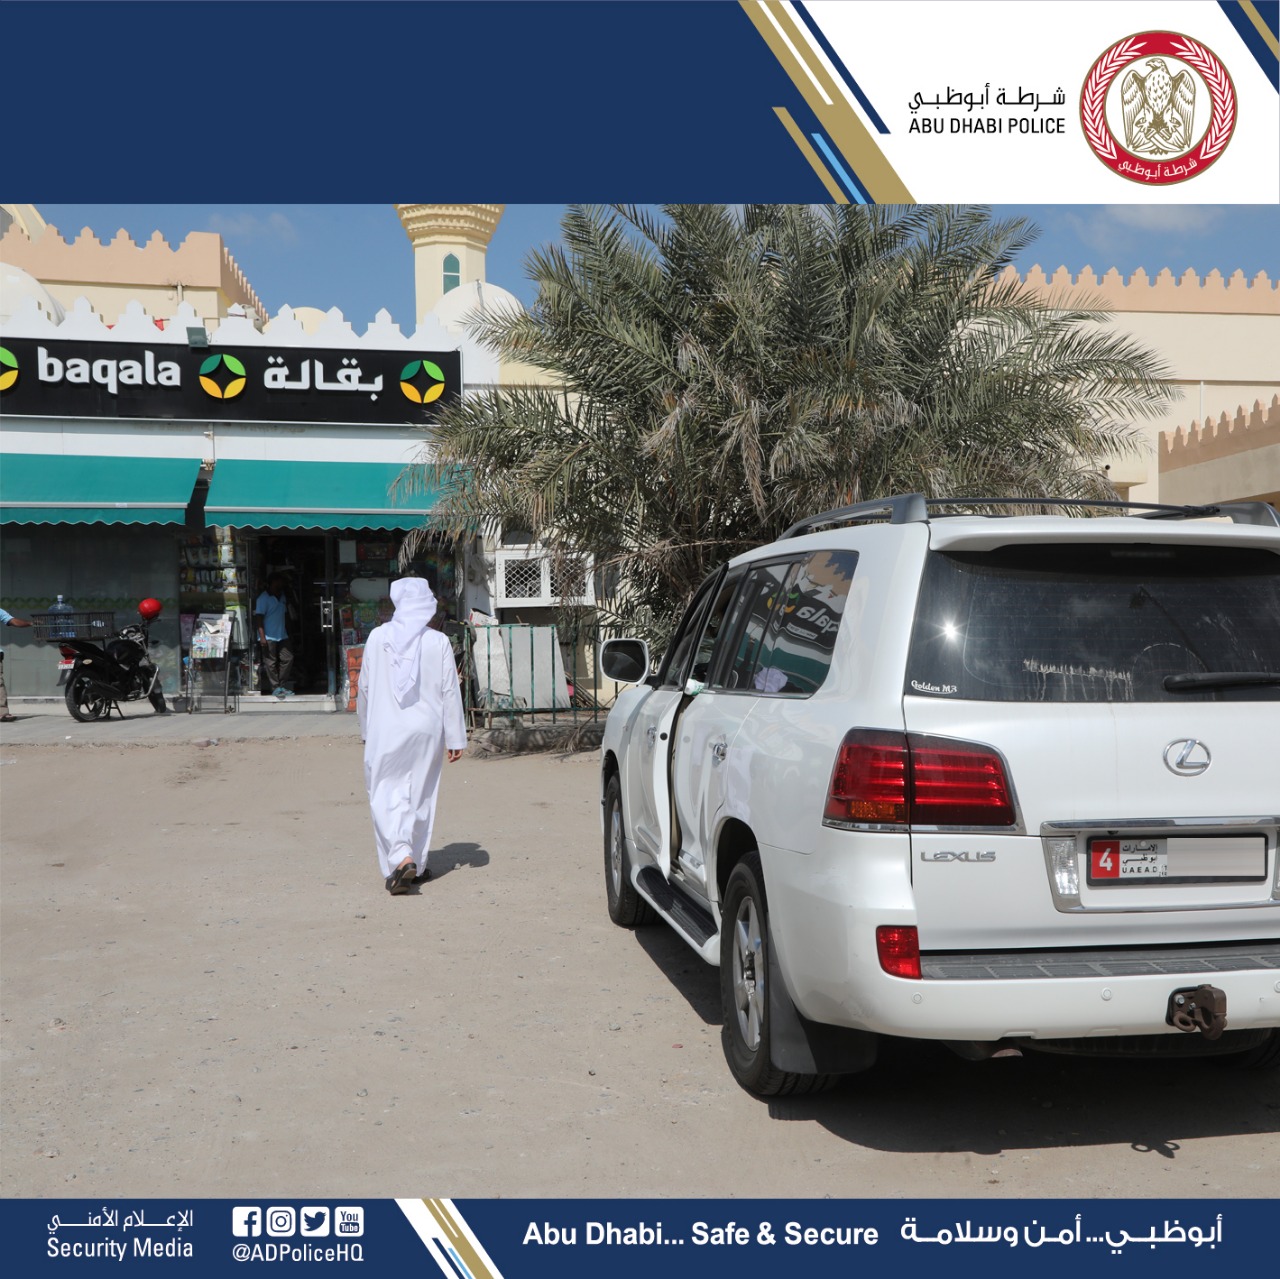 ‫شرطة أبوظبي تحذر من  ترك المركبات في حالة تشغيل أثناء التسوق‬